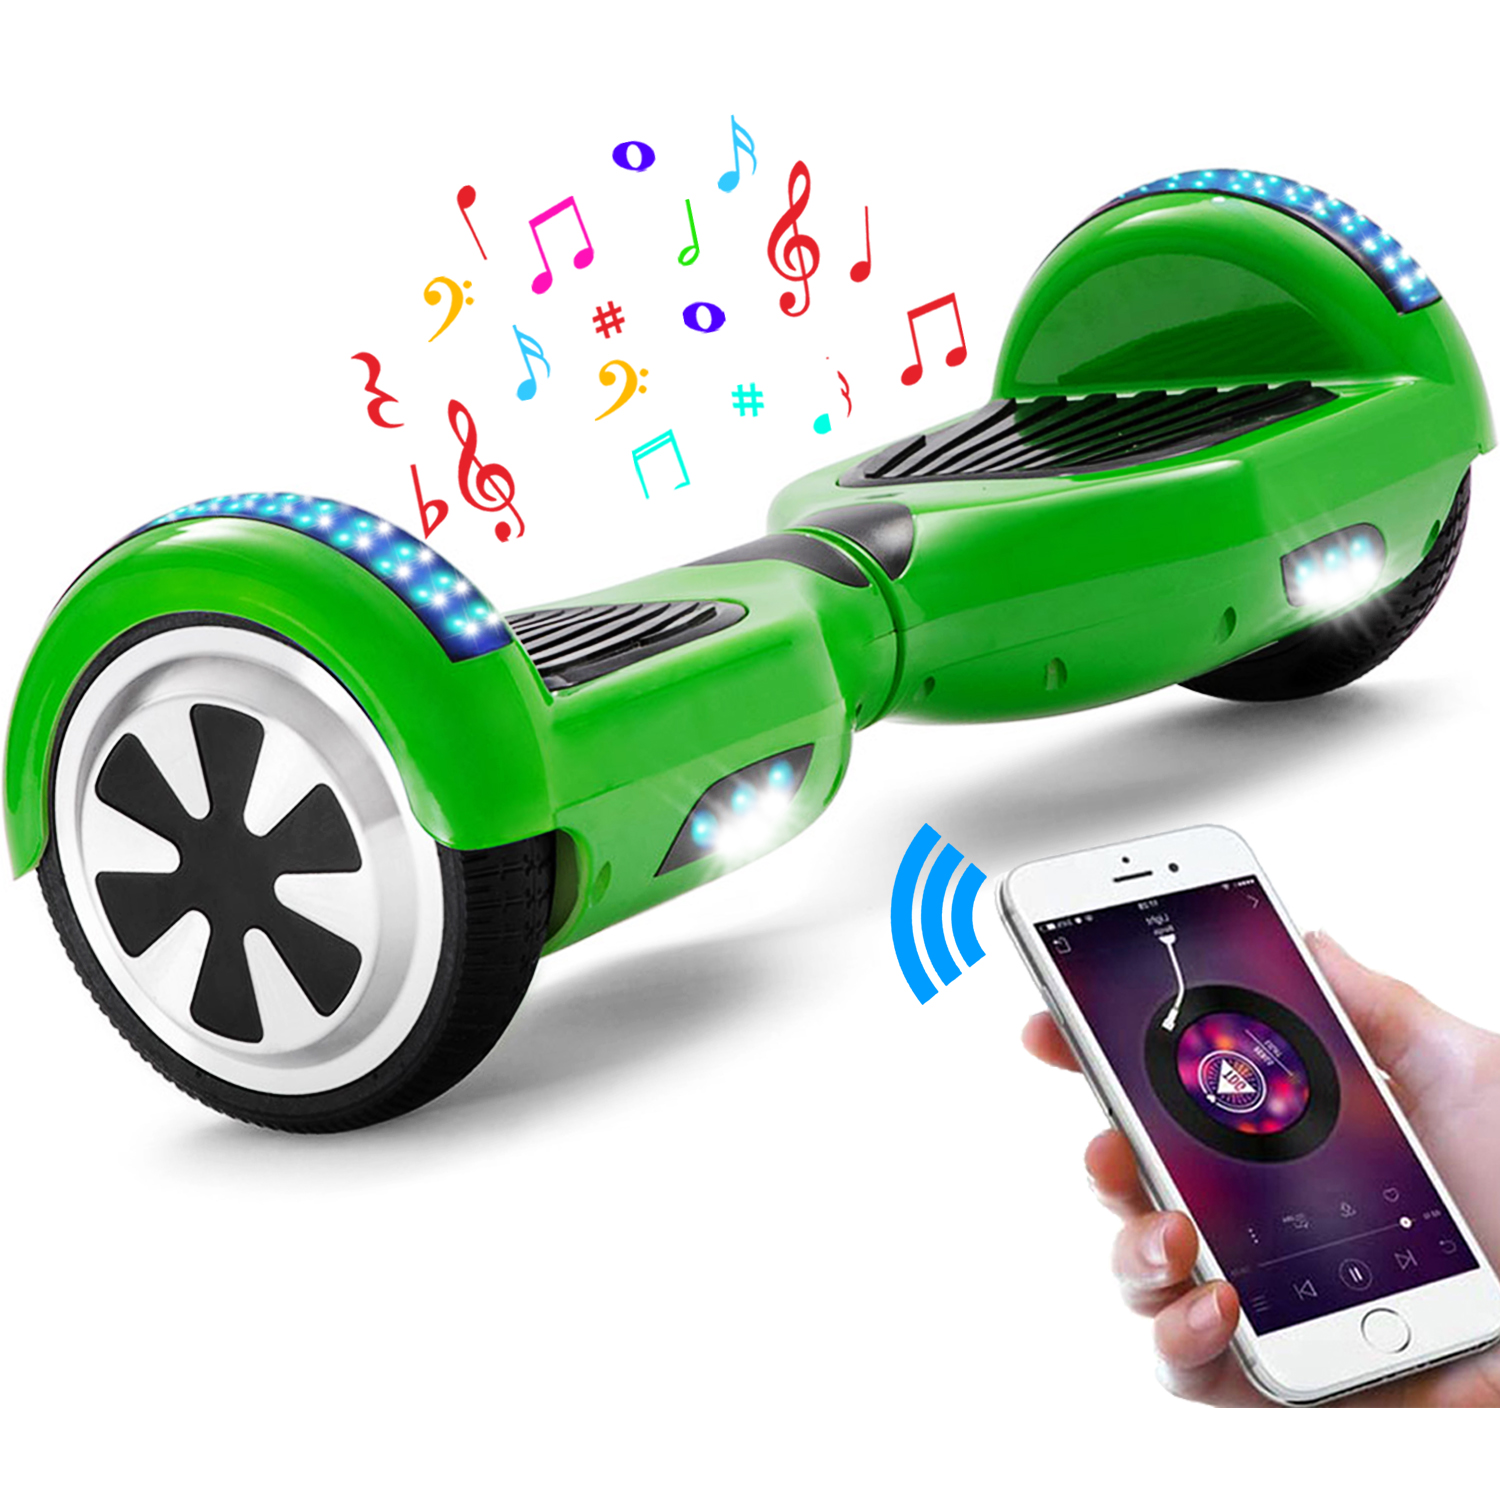 Neues 6,5" Hoverboard grün mit Bluetooth Musik Lautsprecher und LED Licht - 500W 12km/h